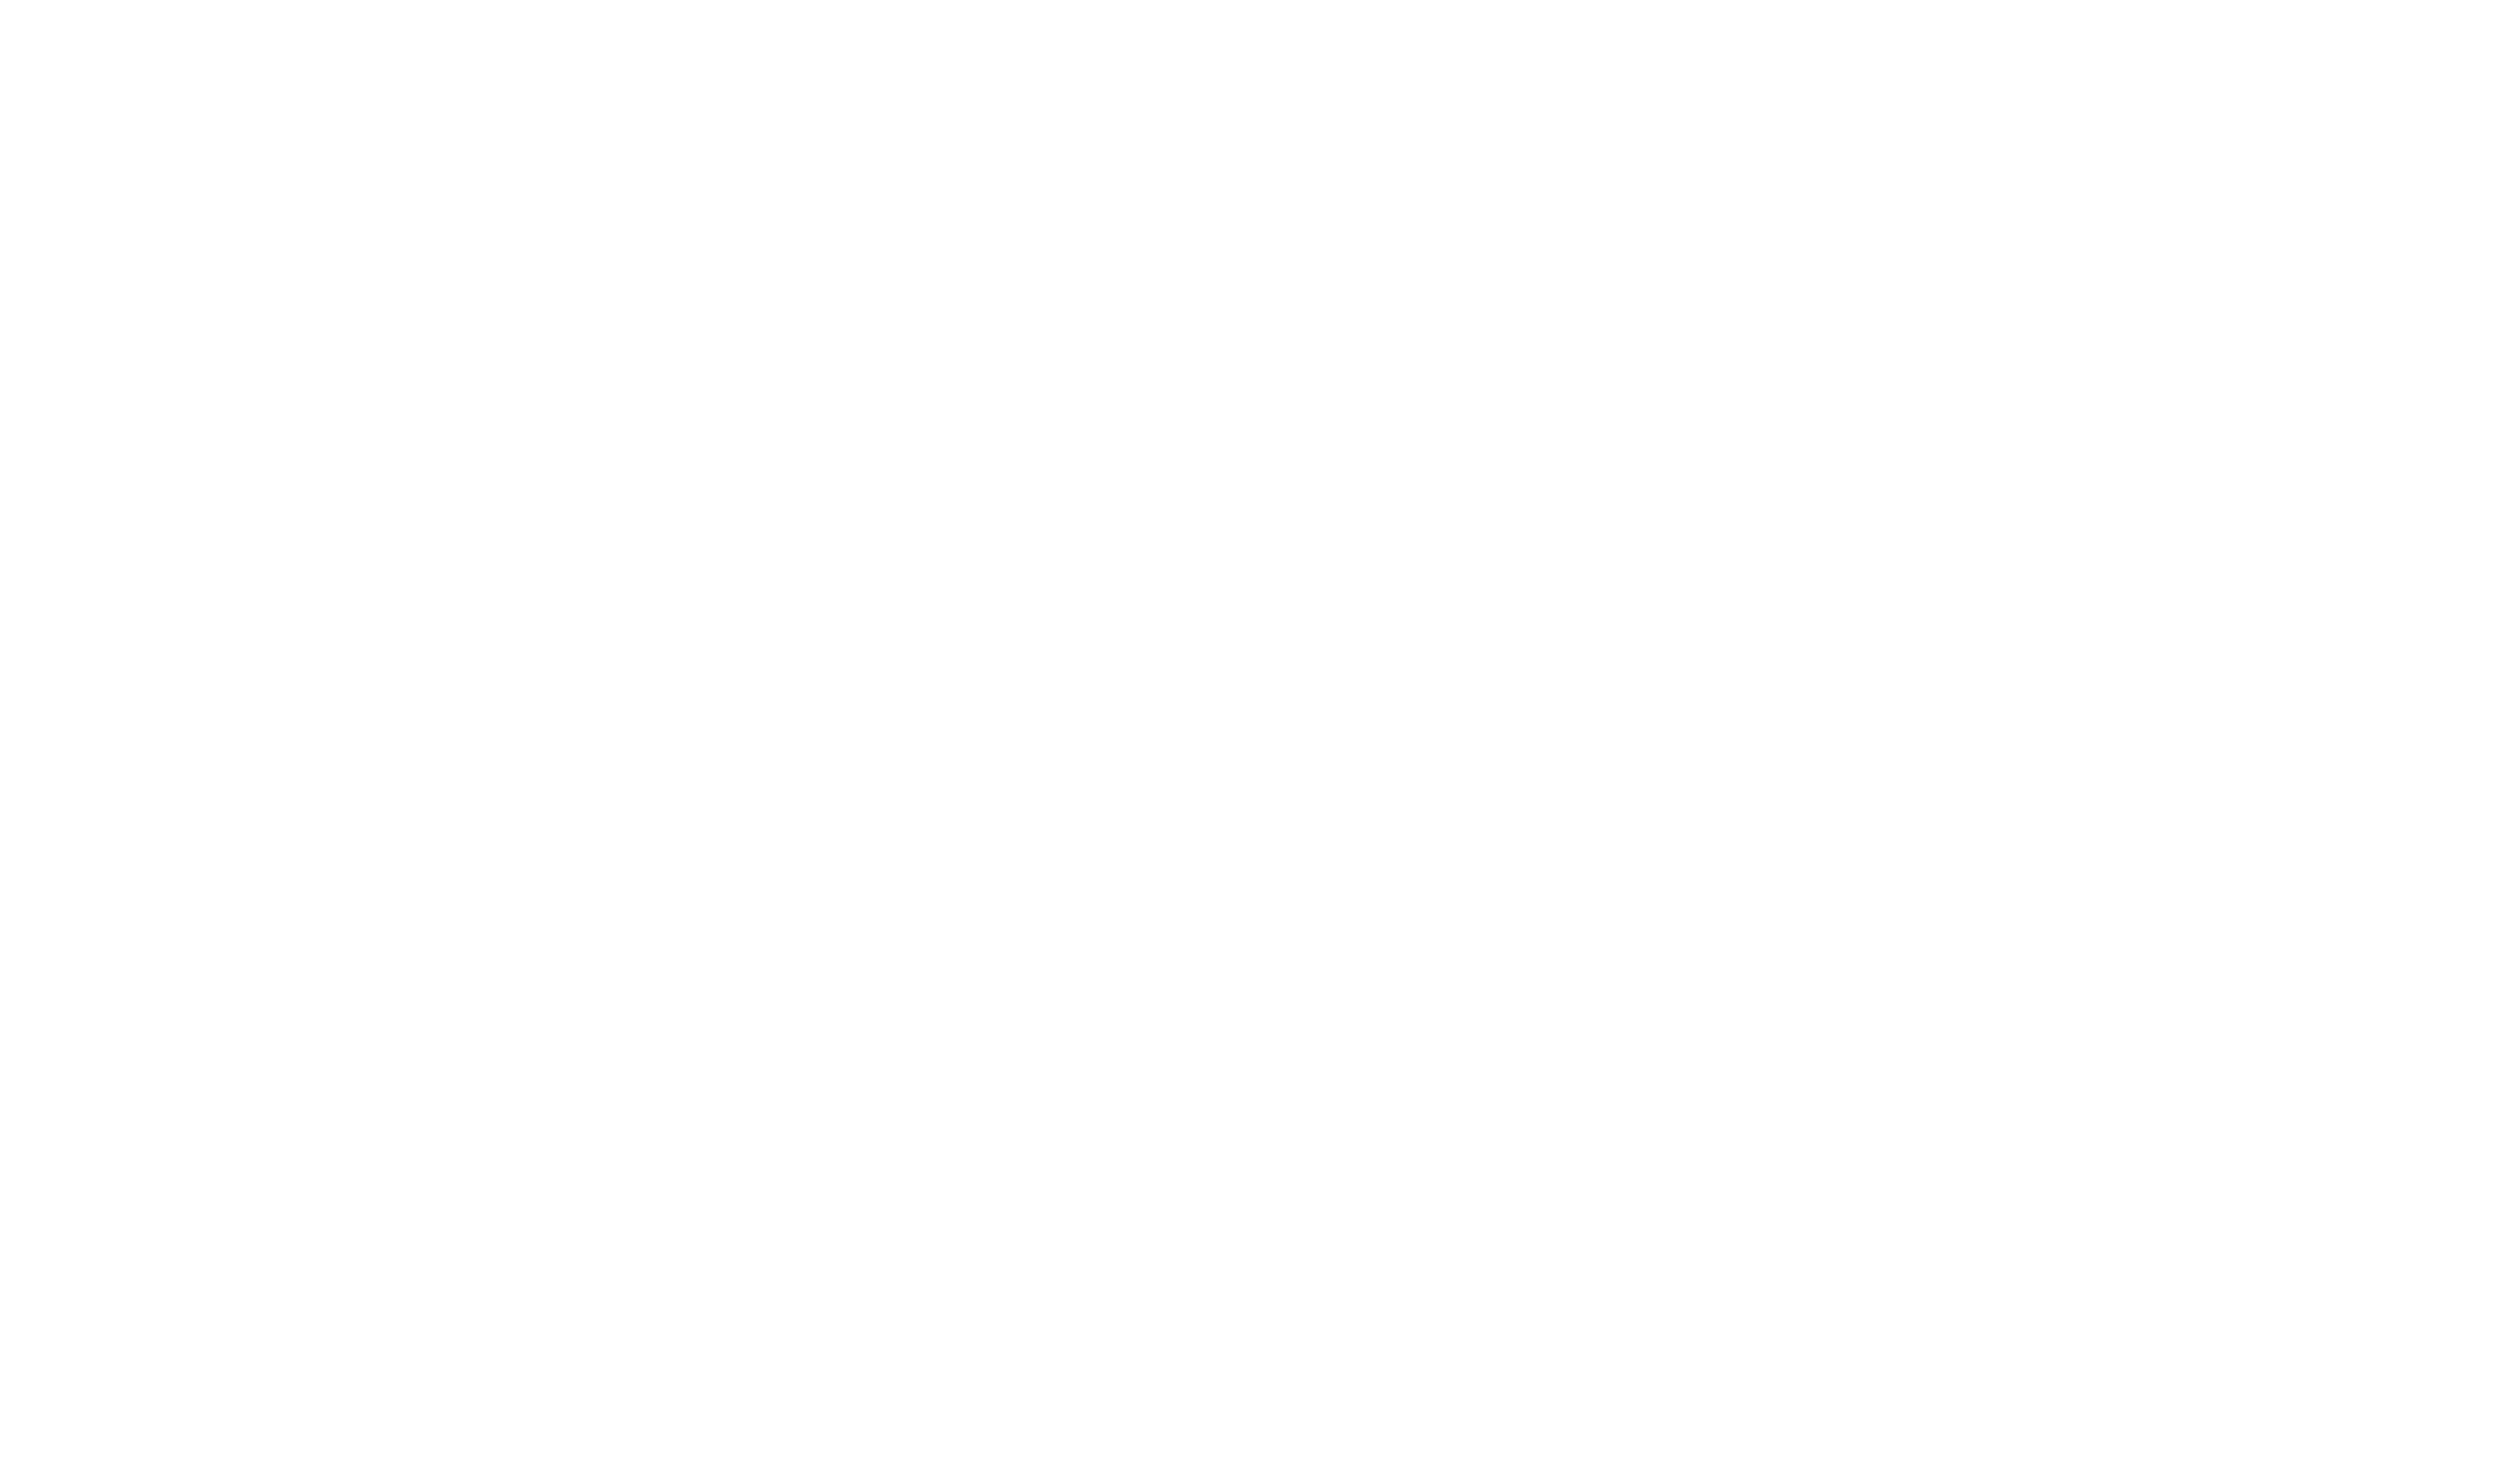 Jacqueline Hayes